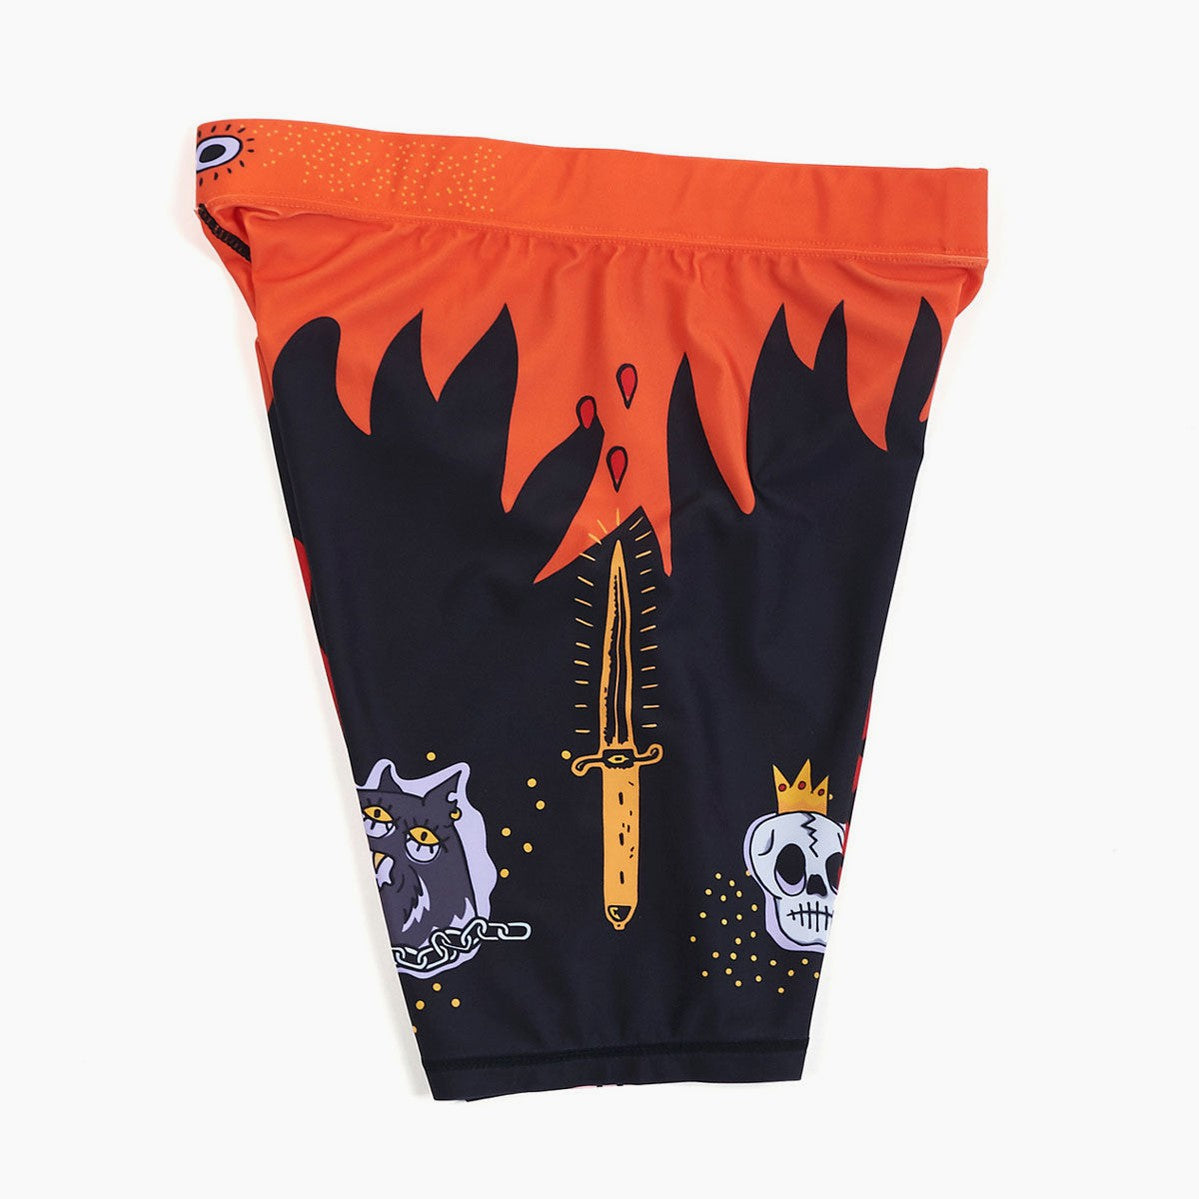 Pantalones cortos compresión Manto Diablo